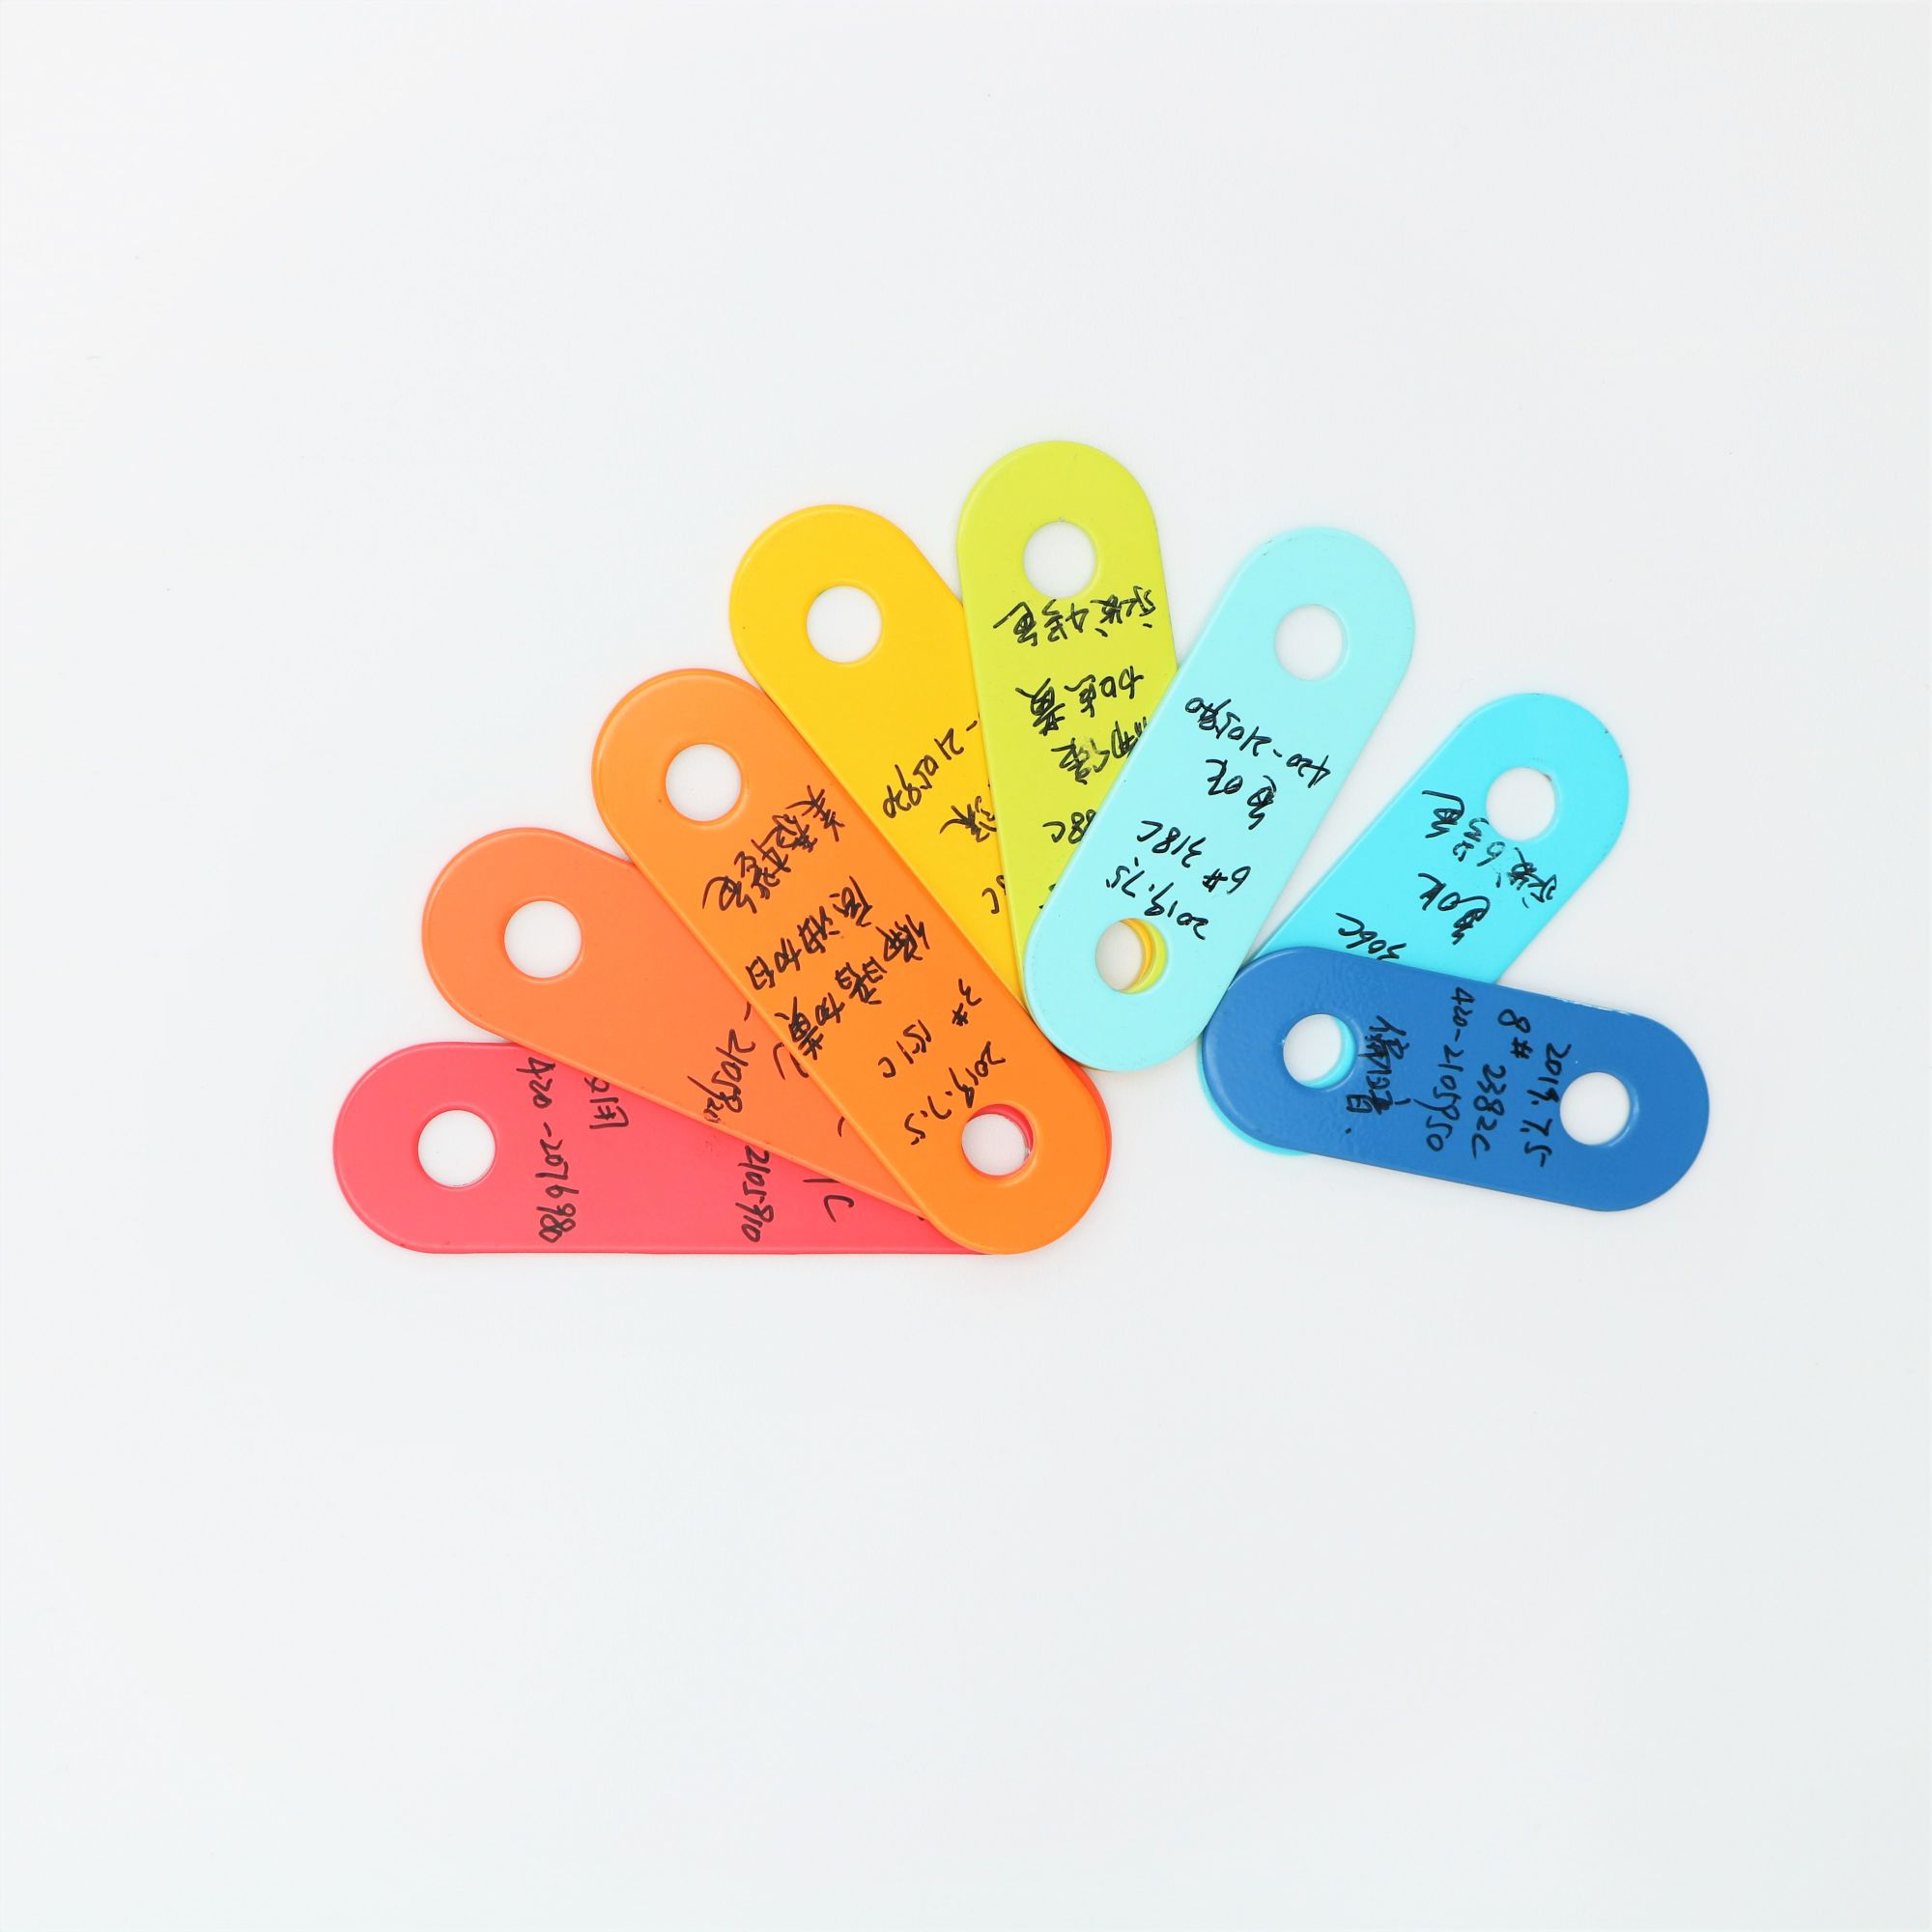 إكسسوارات لعبة بيانو للأطفال مكونة من ثماني ملاحظات ملونة منتشرة